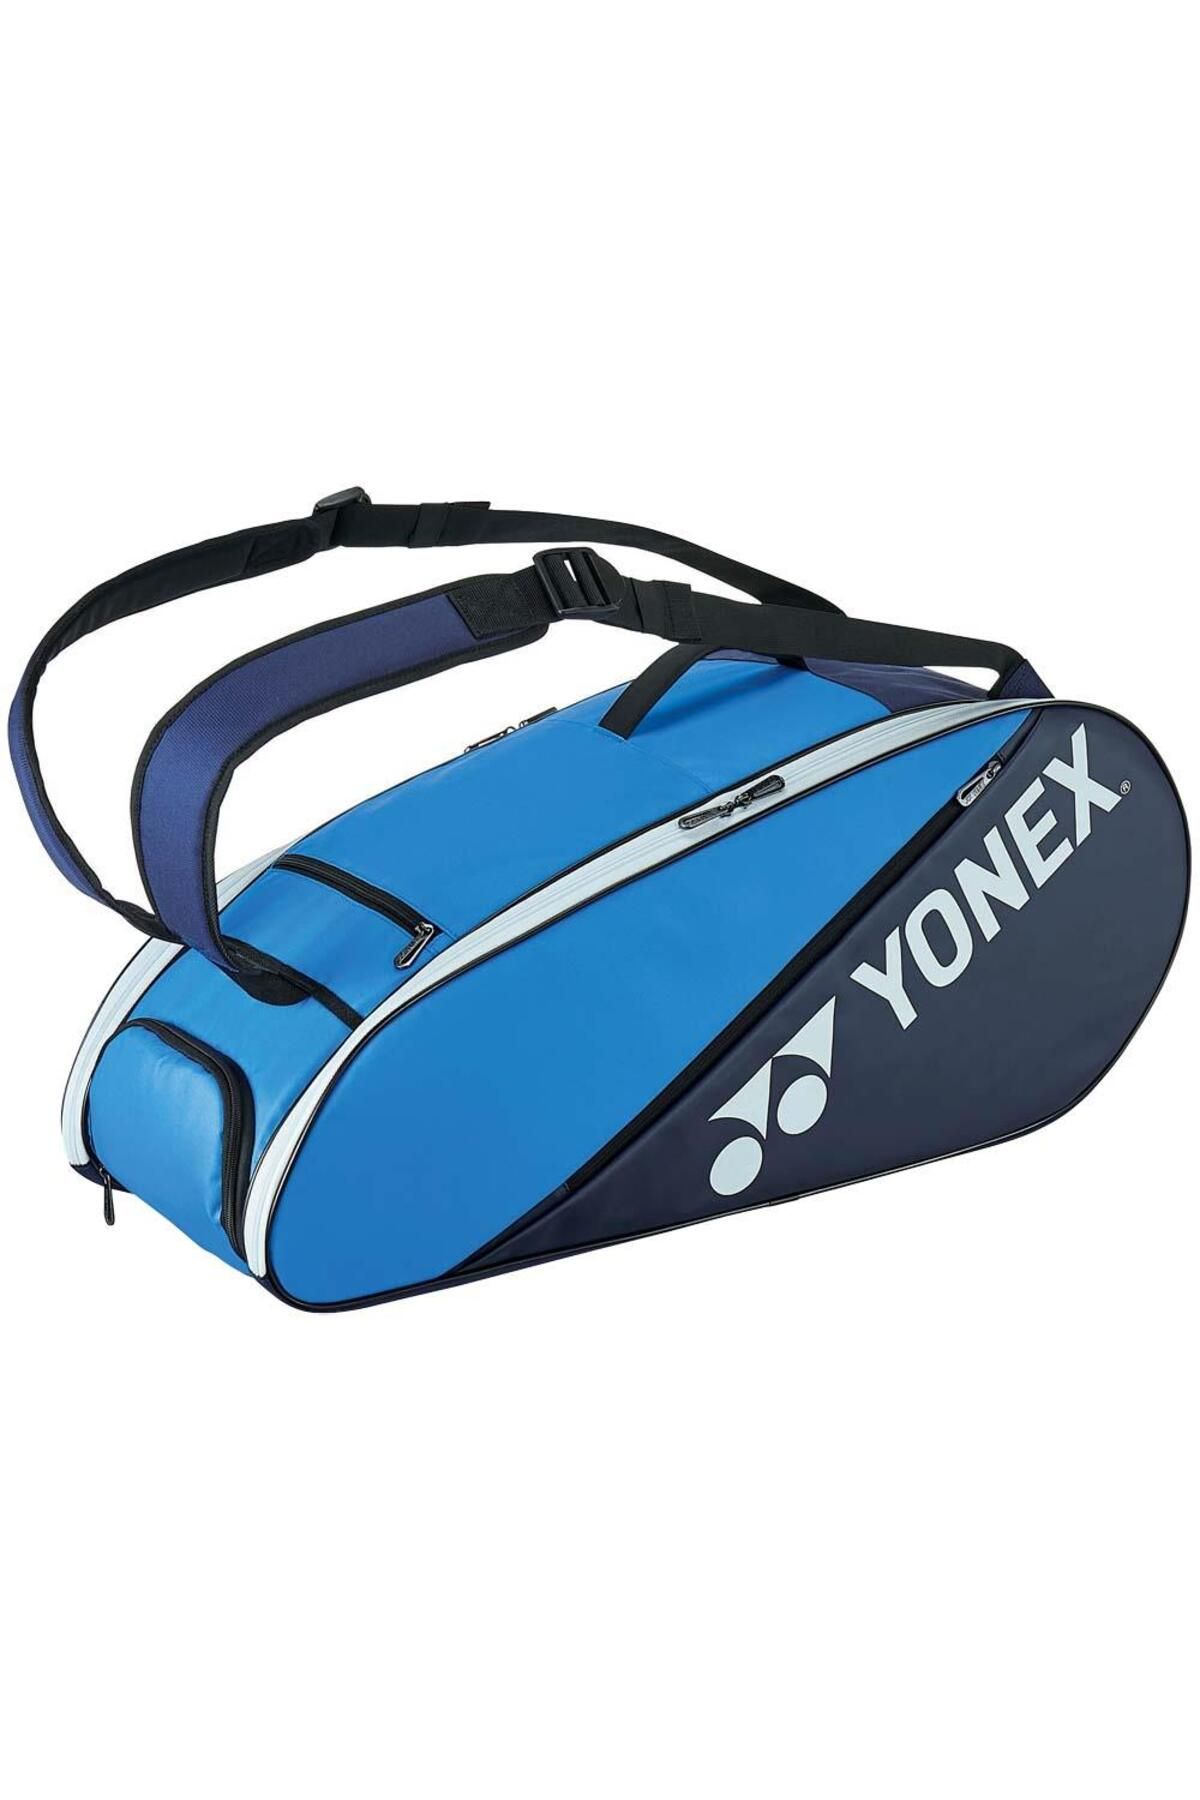 Yonex Pro 82226 Mavi Tenis Probag Çantası Ayakkabı Bölmeli